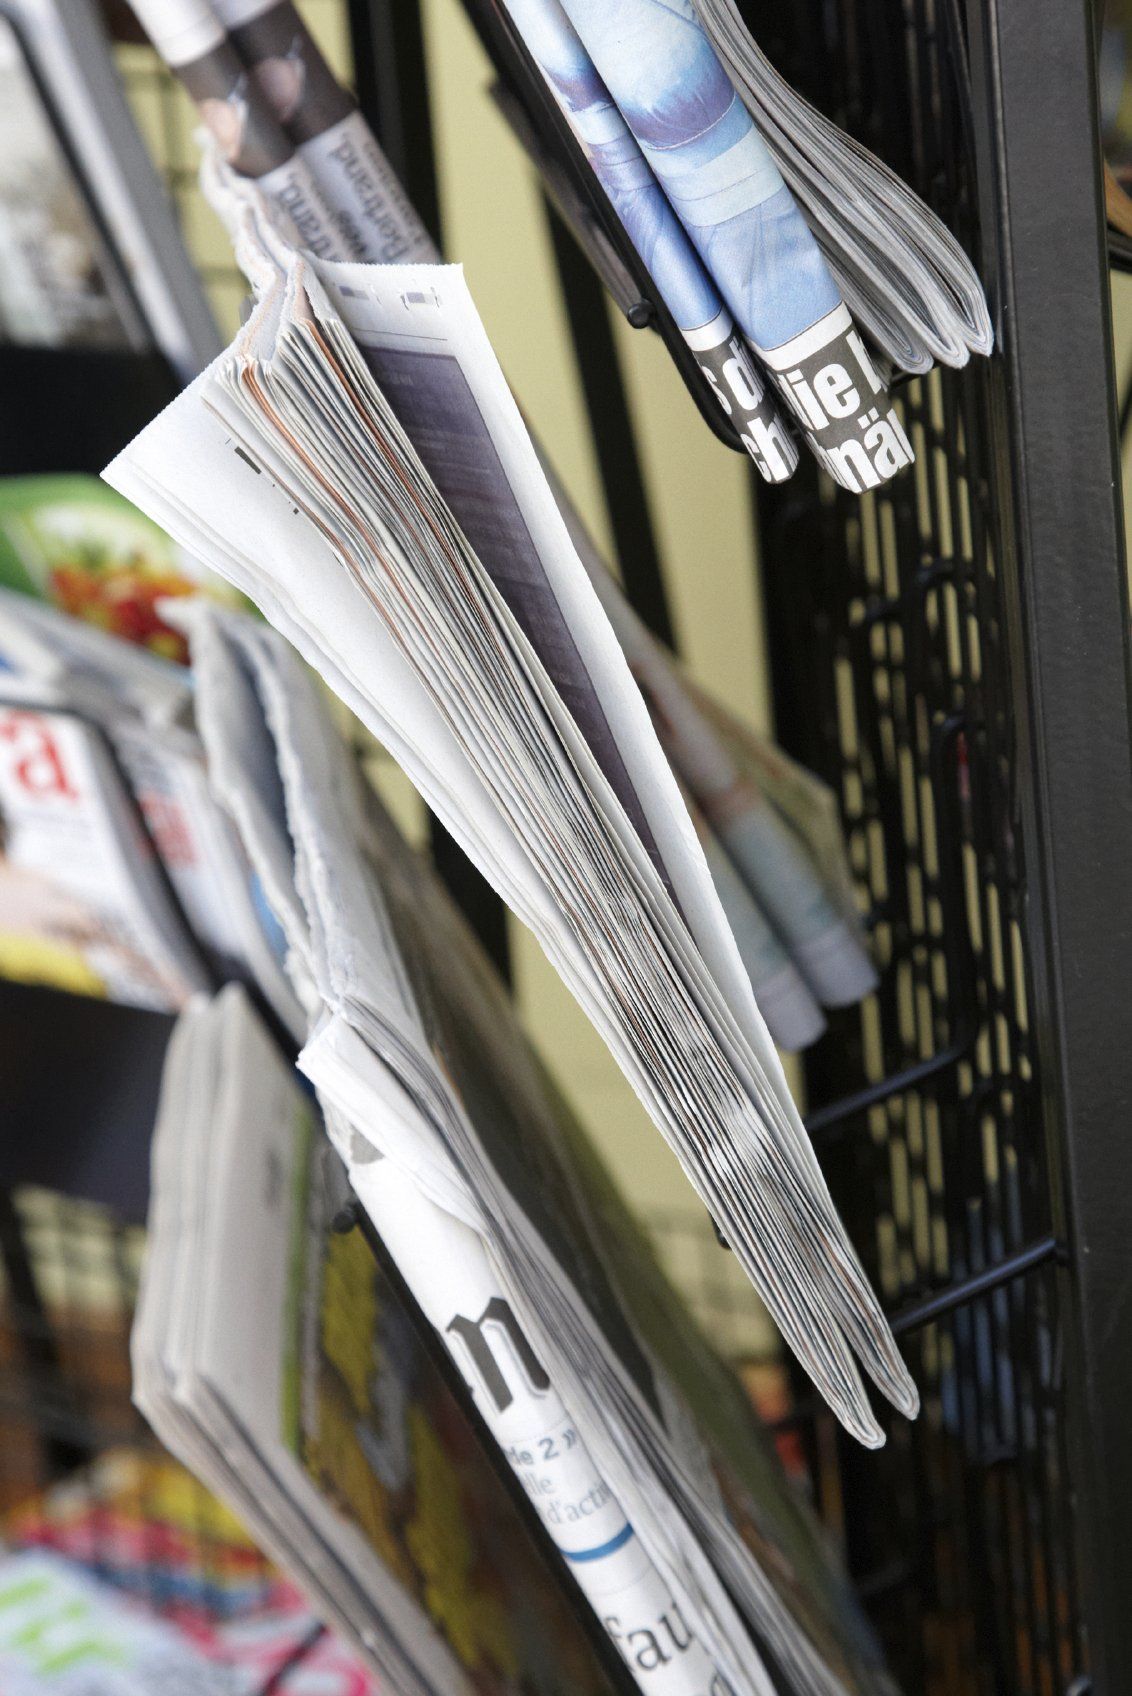 Newspapers in rack